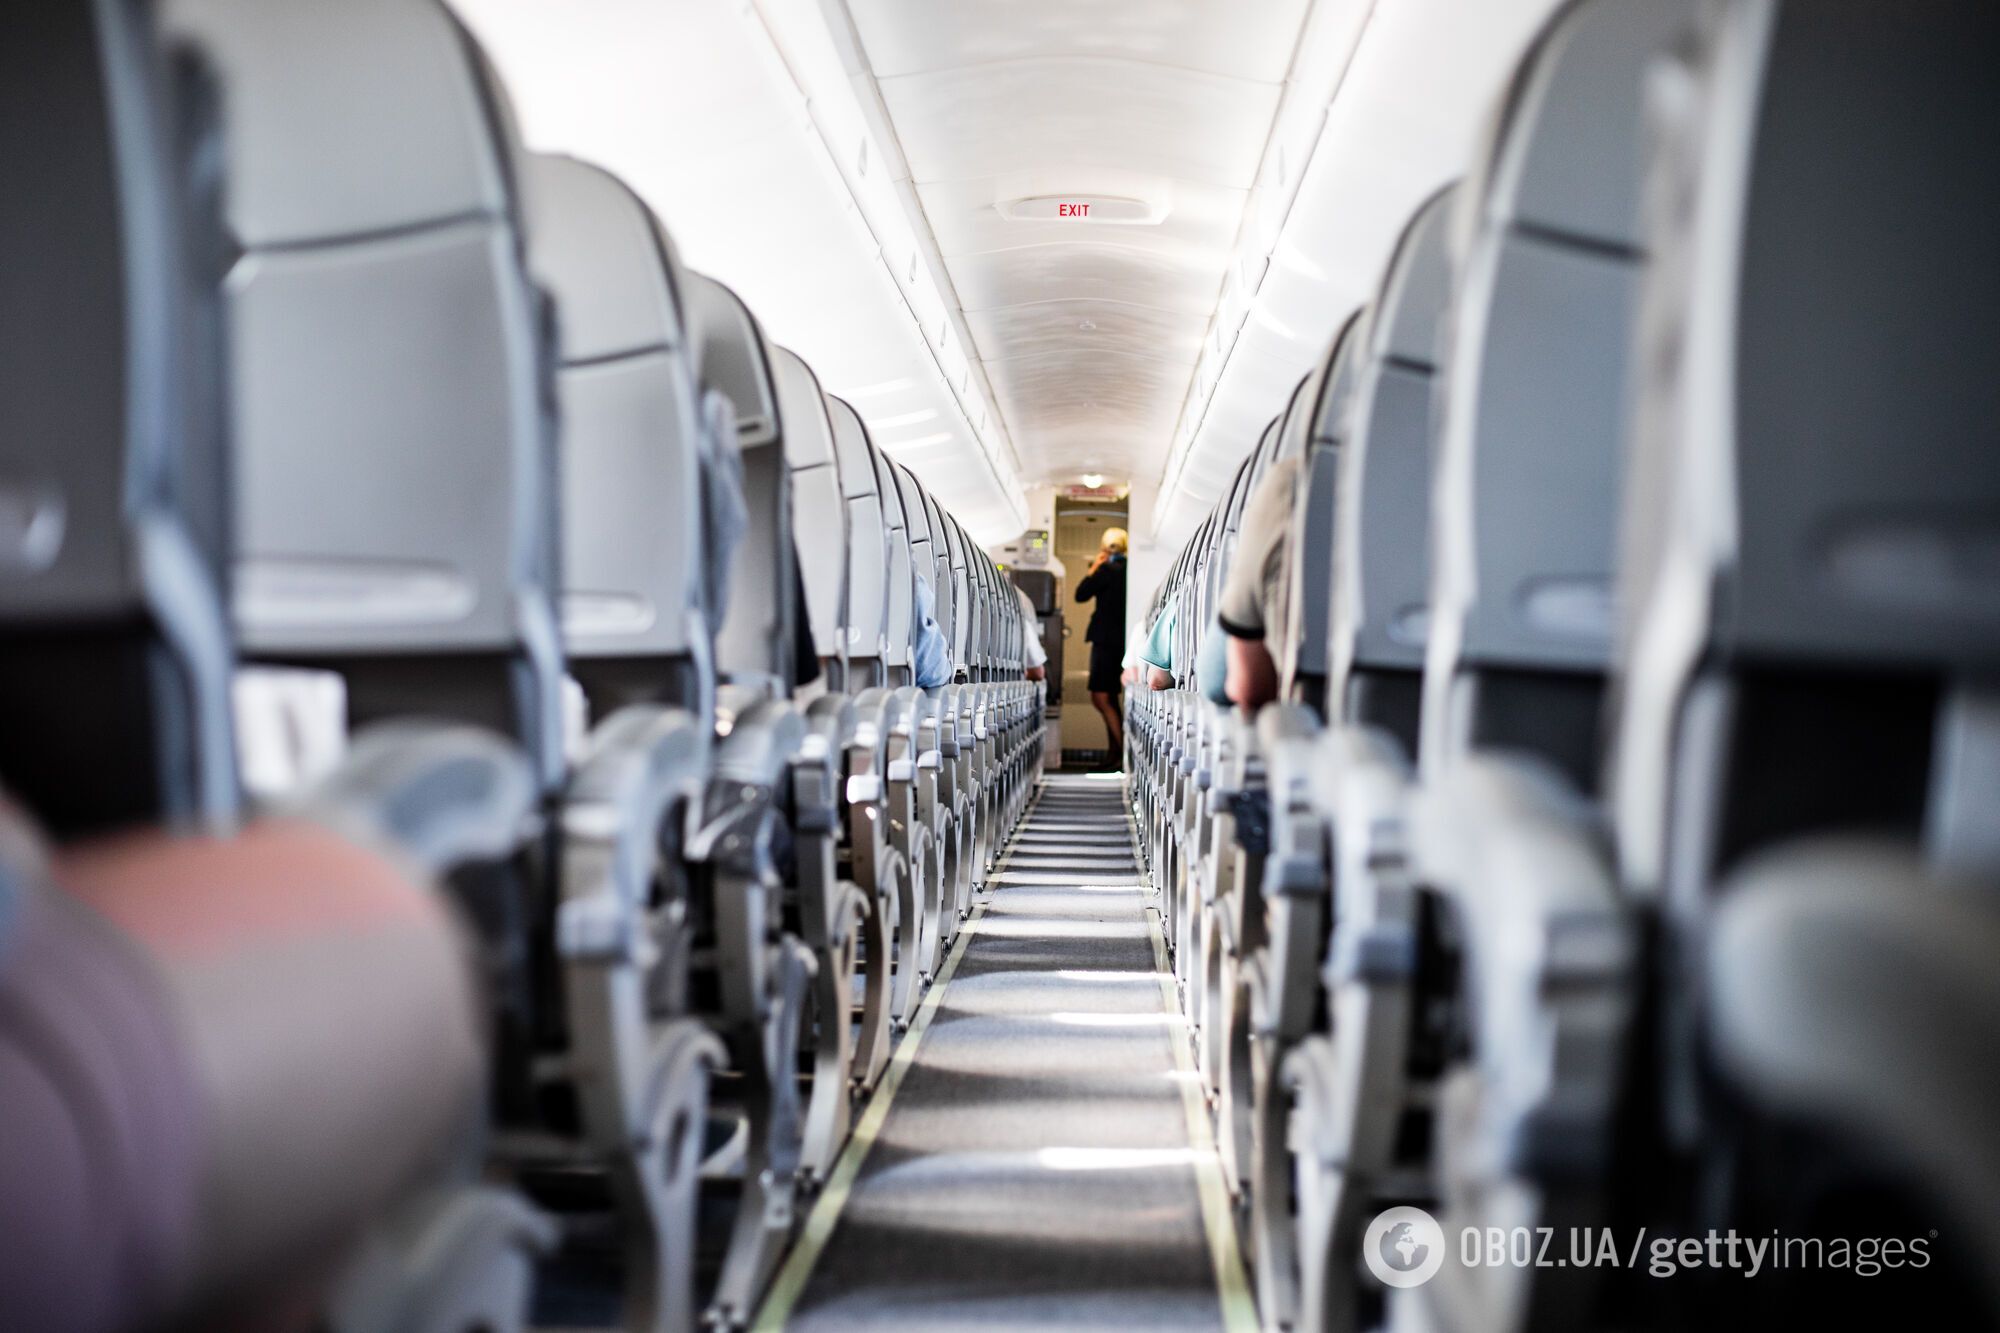 Стюардесса назвала самое грязное место в самолете, к которому туристы "никогда не должны прикасаться"